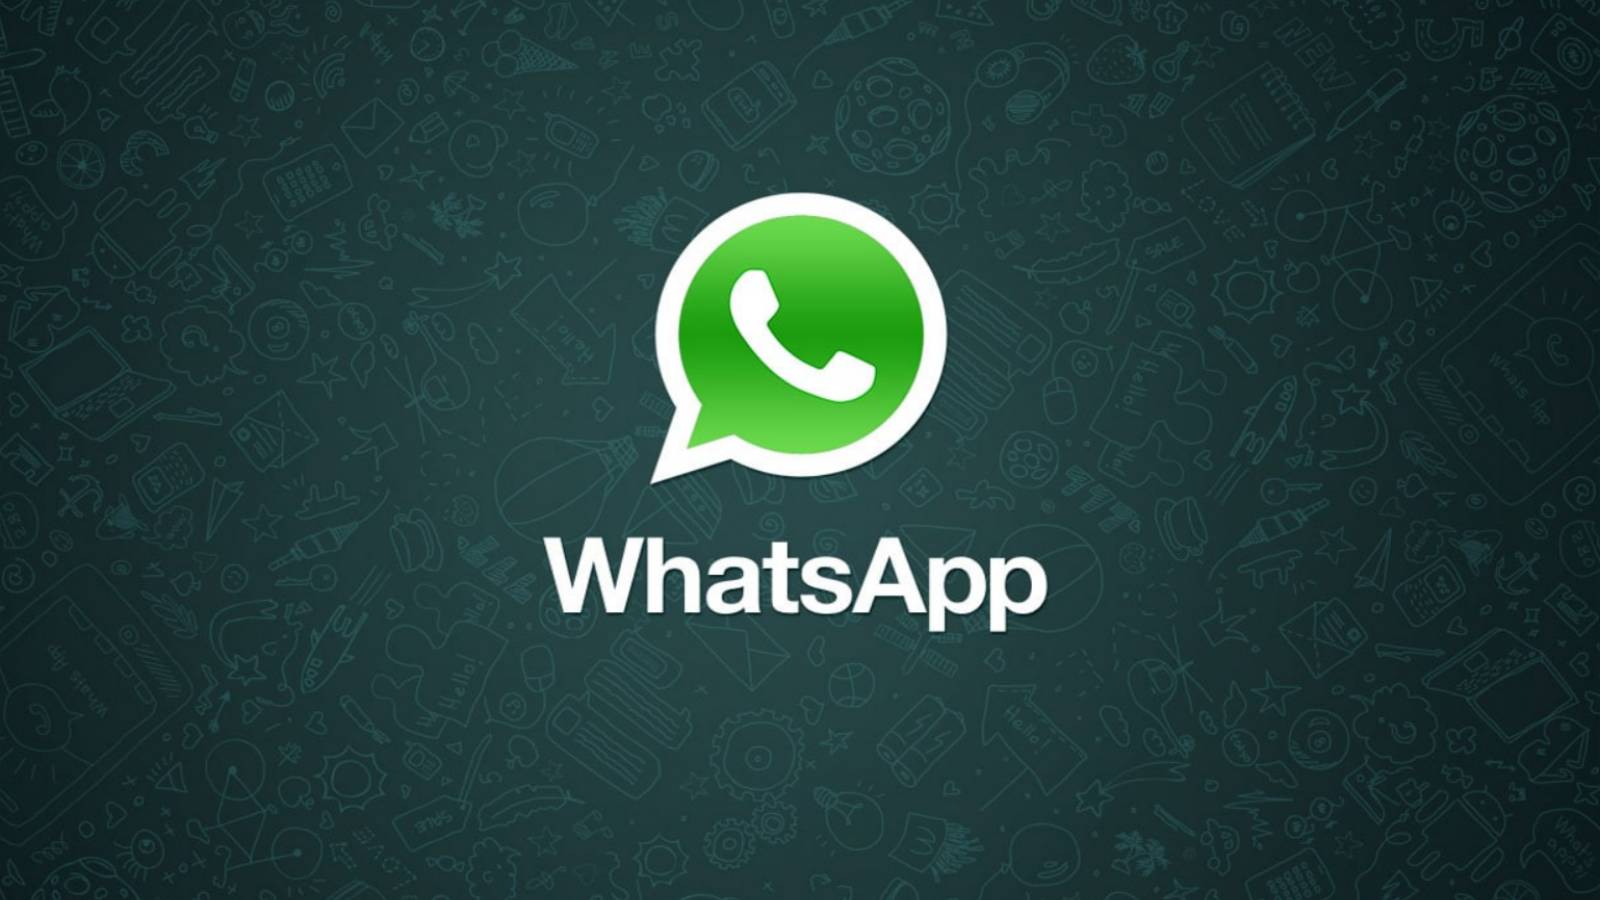 WhatsApp umilitor